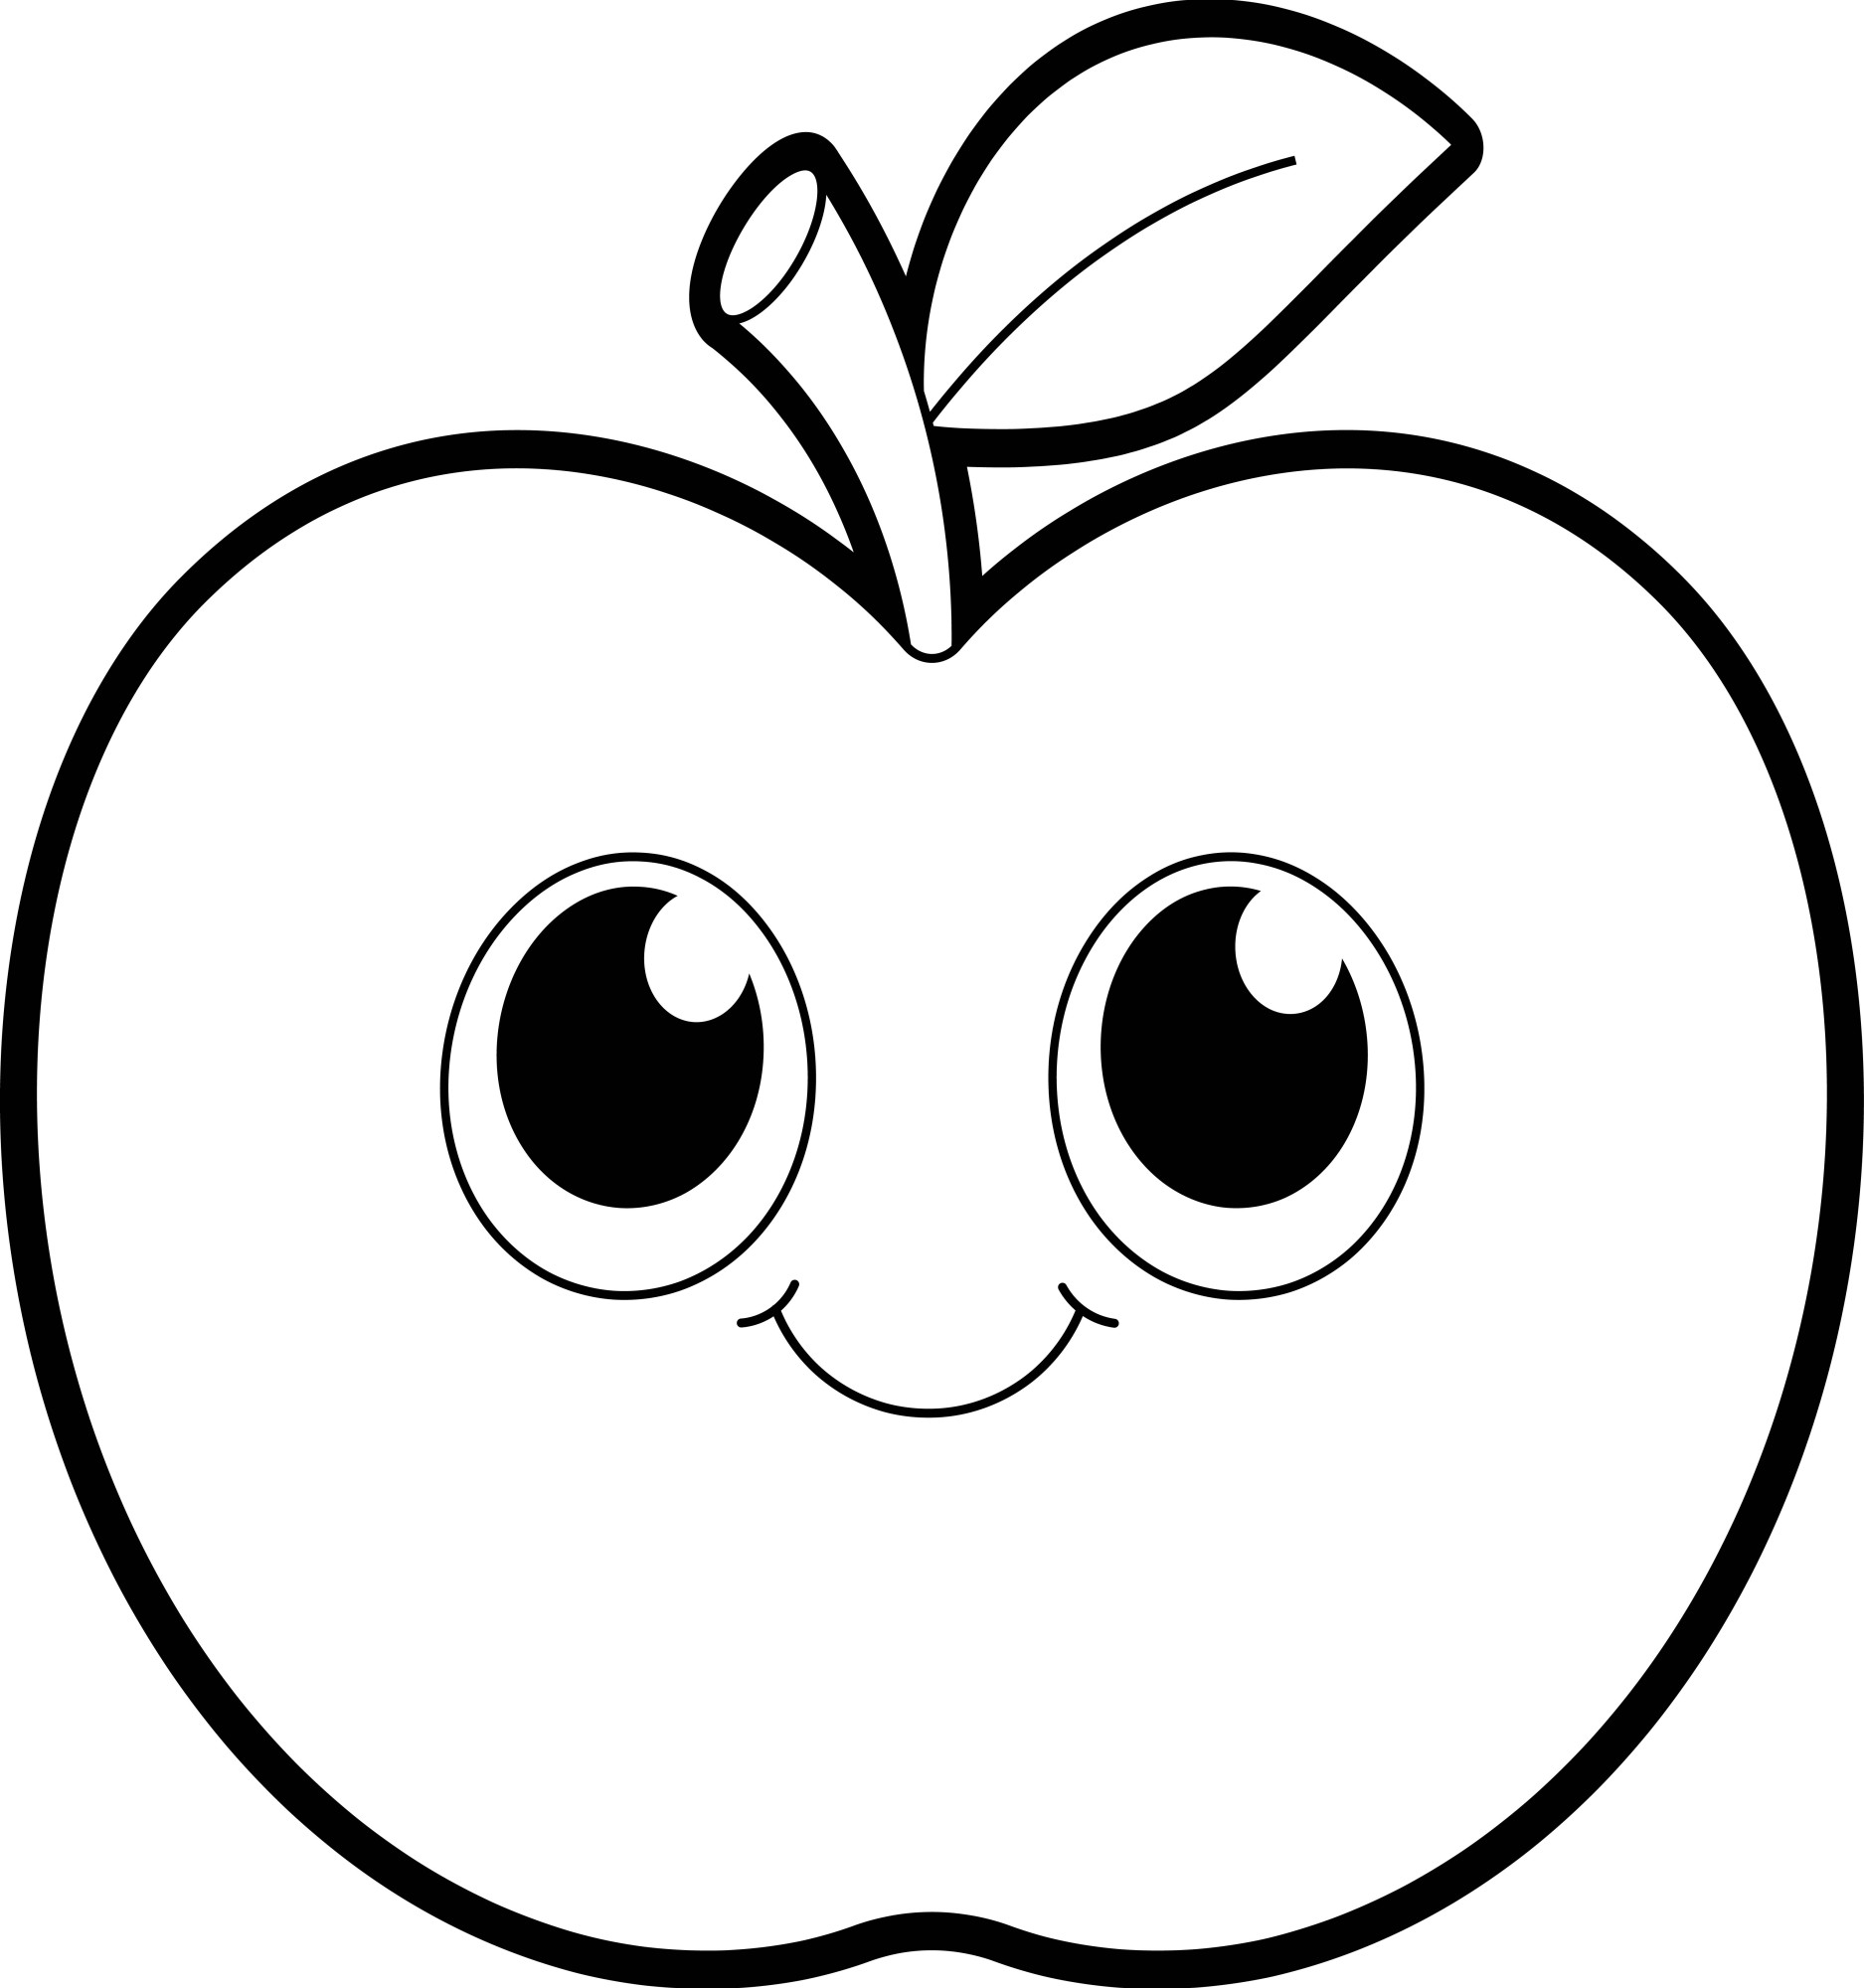 Раскраска для детей: круглое яблоко с красивыми глазами